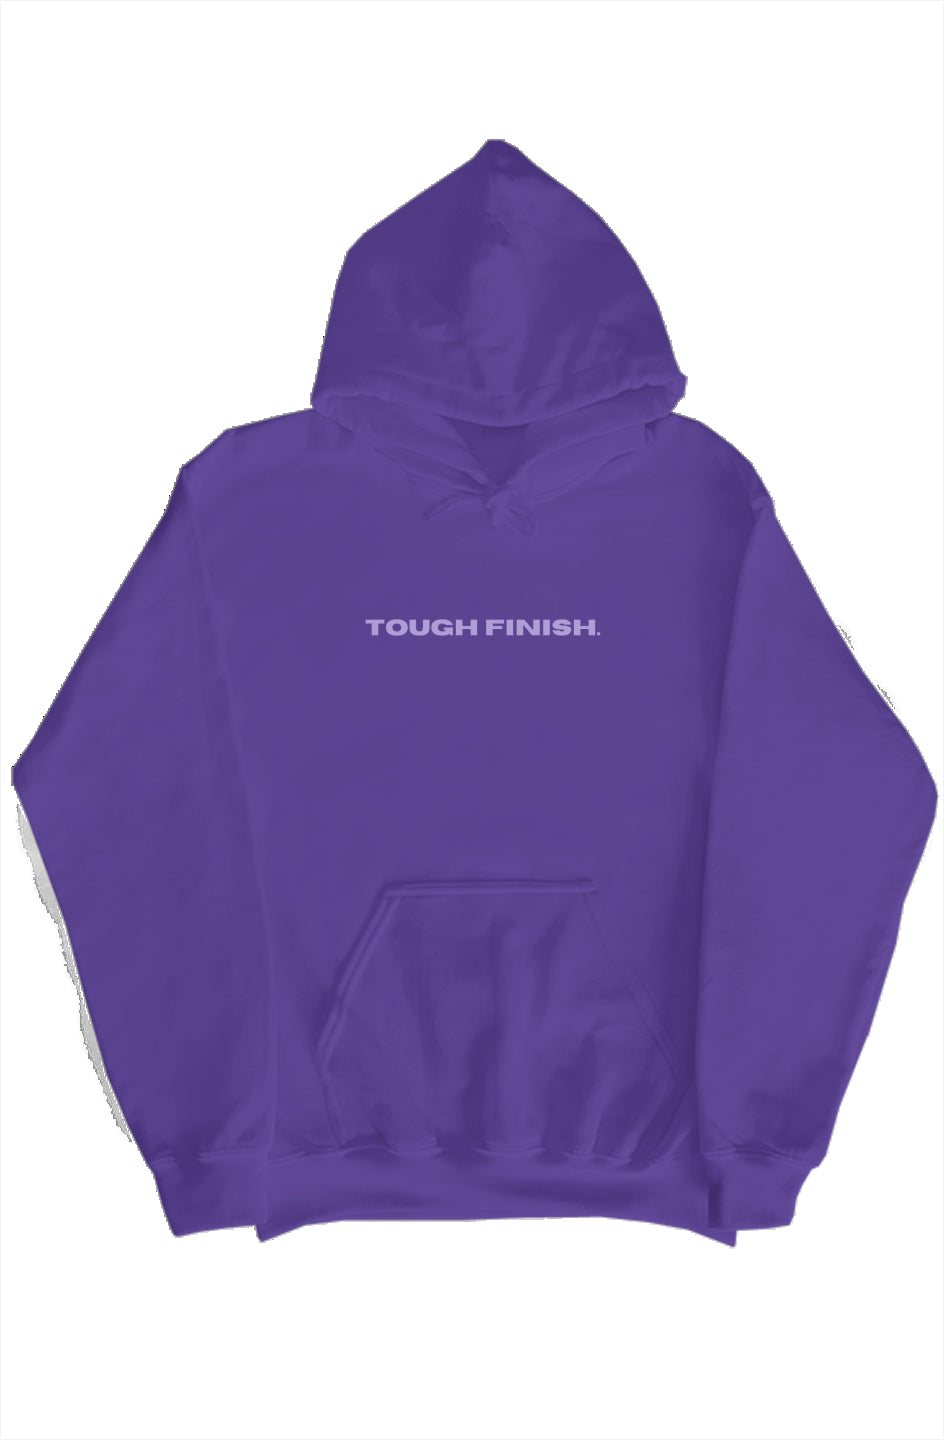 TRANSFER PRINT purple hoodie